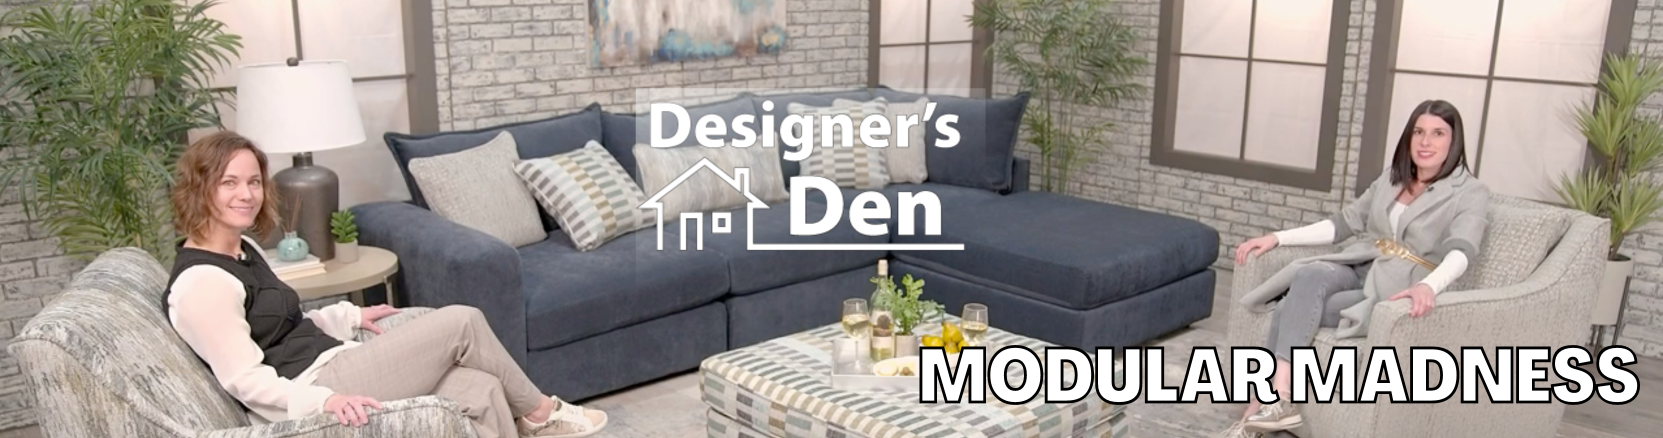 Designer's Den | Modular Madness